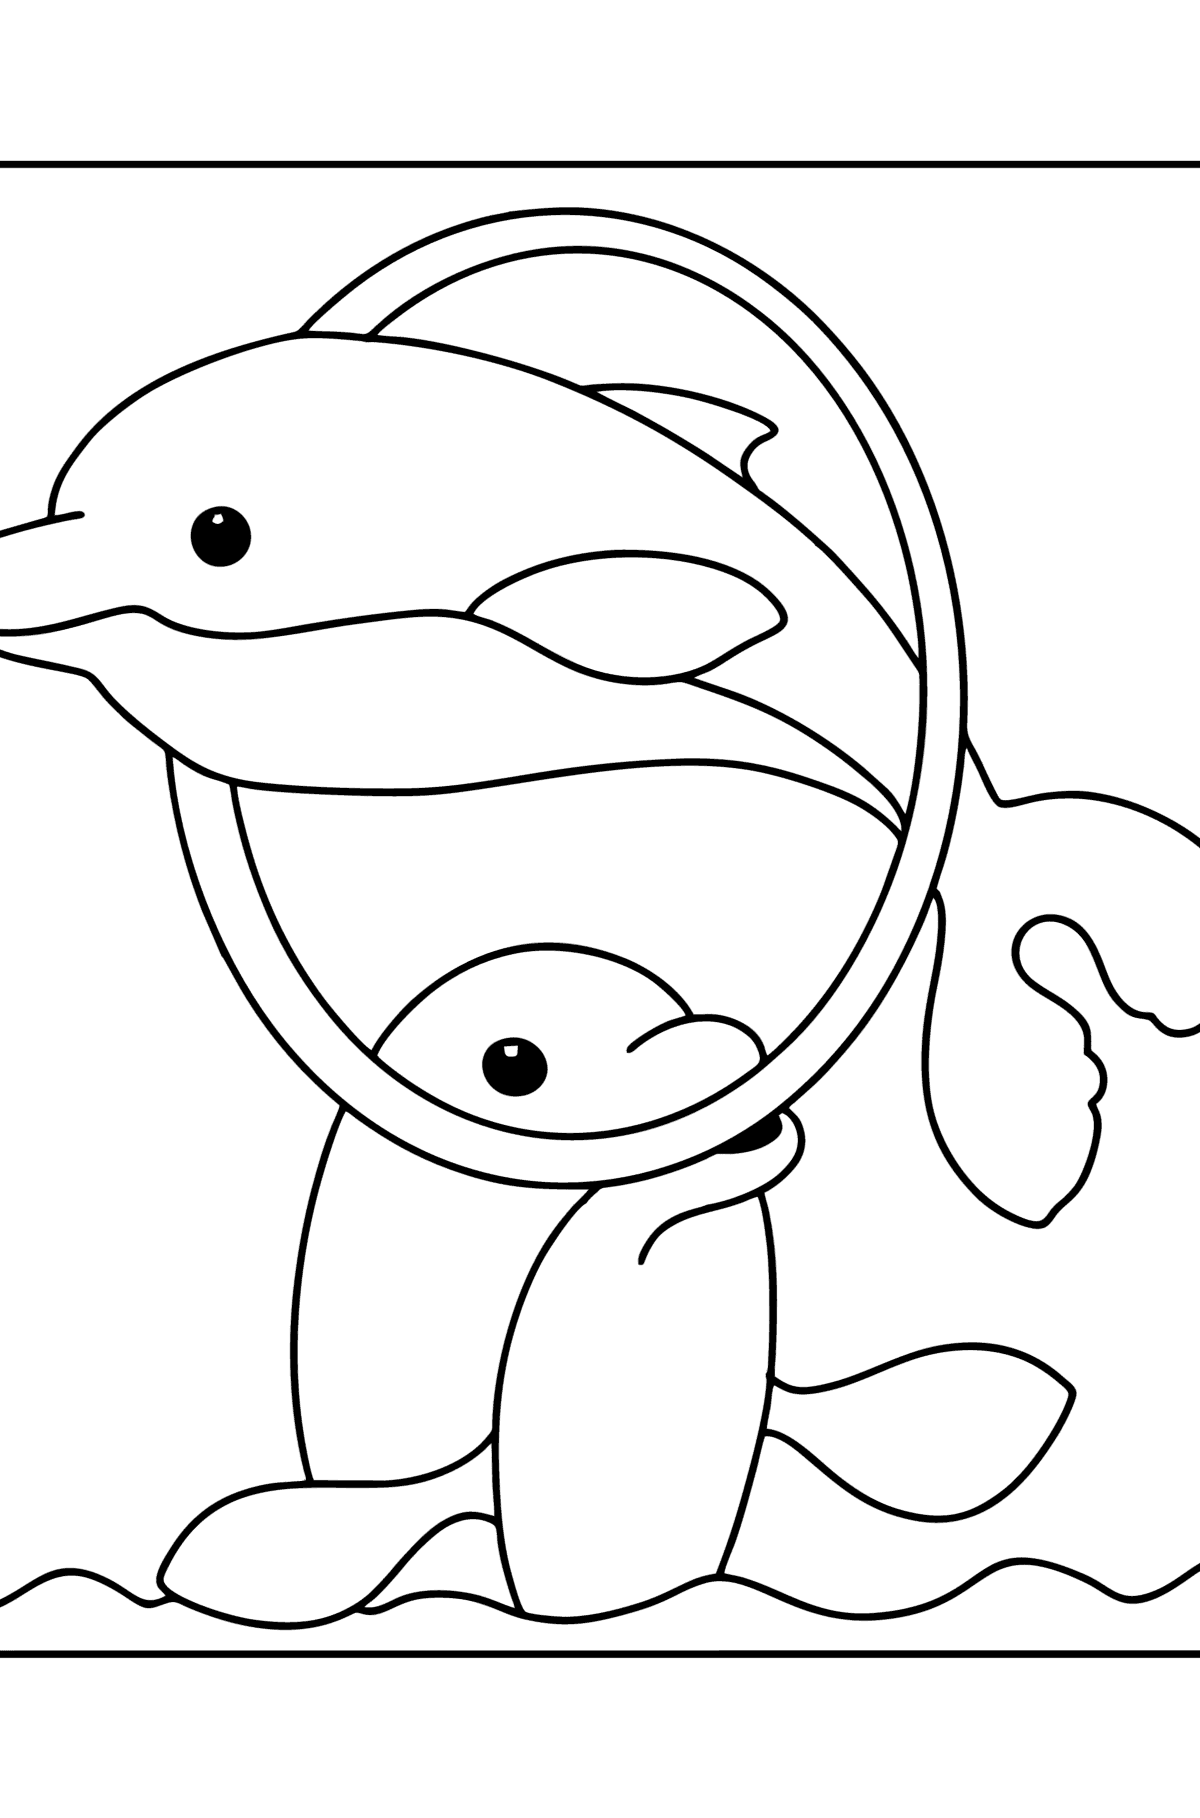 Dibujo de delfines en el agua para colorear - Dibujos para Colorear para Niños